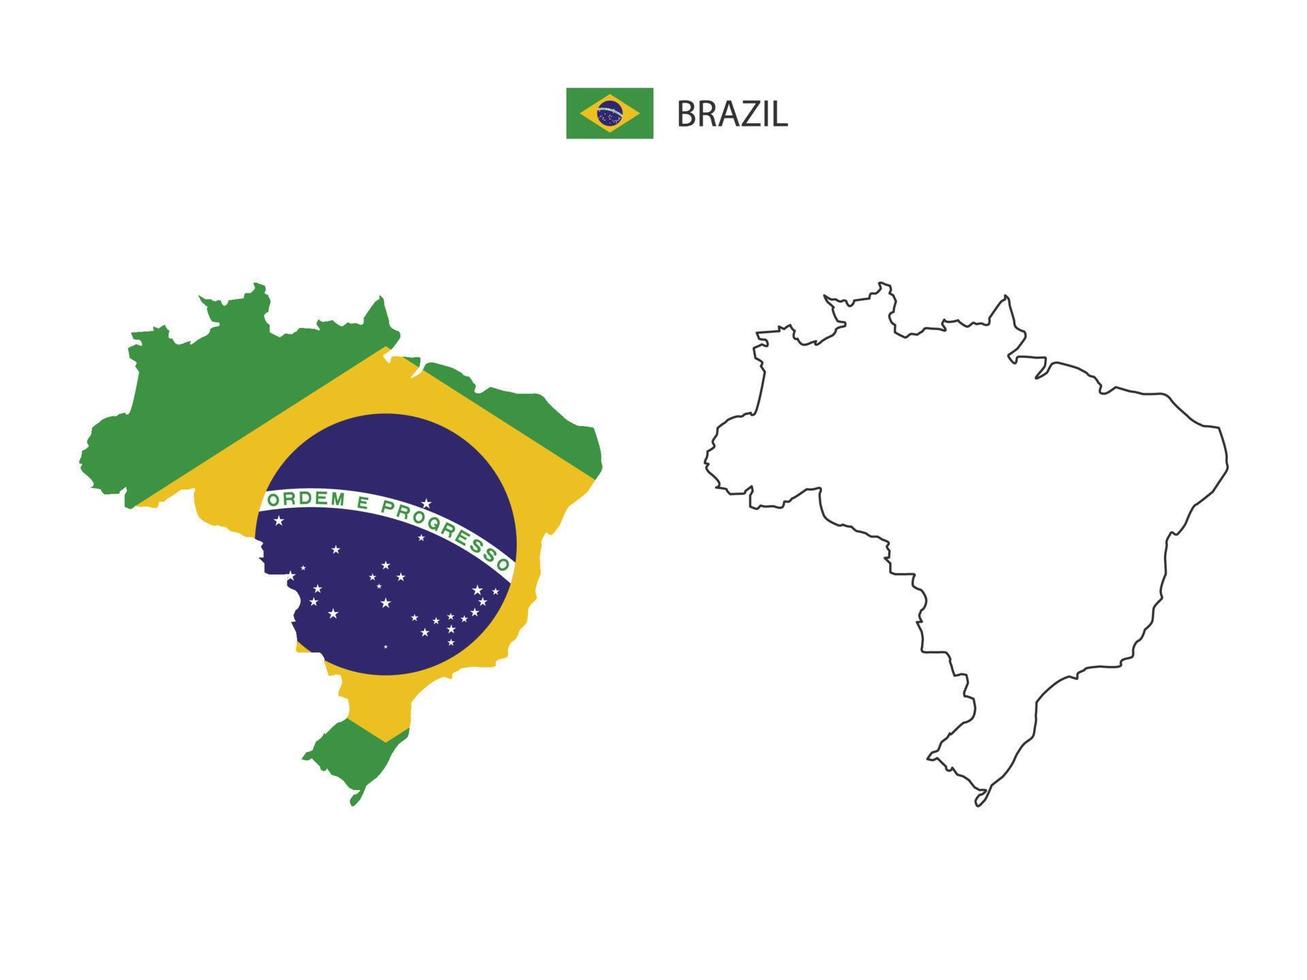 vetor da cidade do mapa do brasil dividido pelo estilo de simplicidade do esboço. tem 2 versões, versão de linha fina preta e cor da versão da bandeira do país. ambos os mapas estavam no fundo branco.